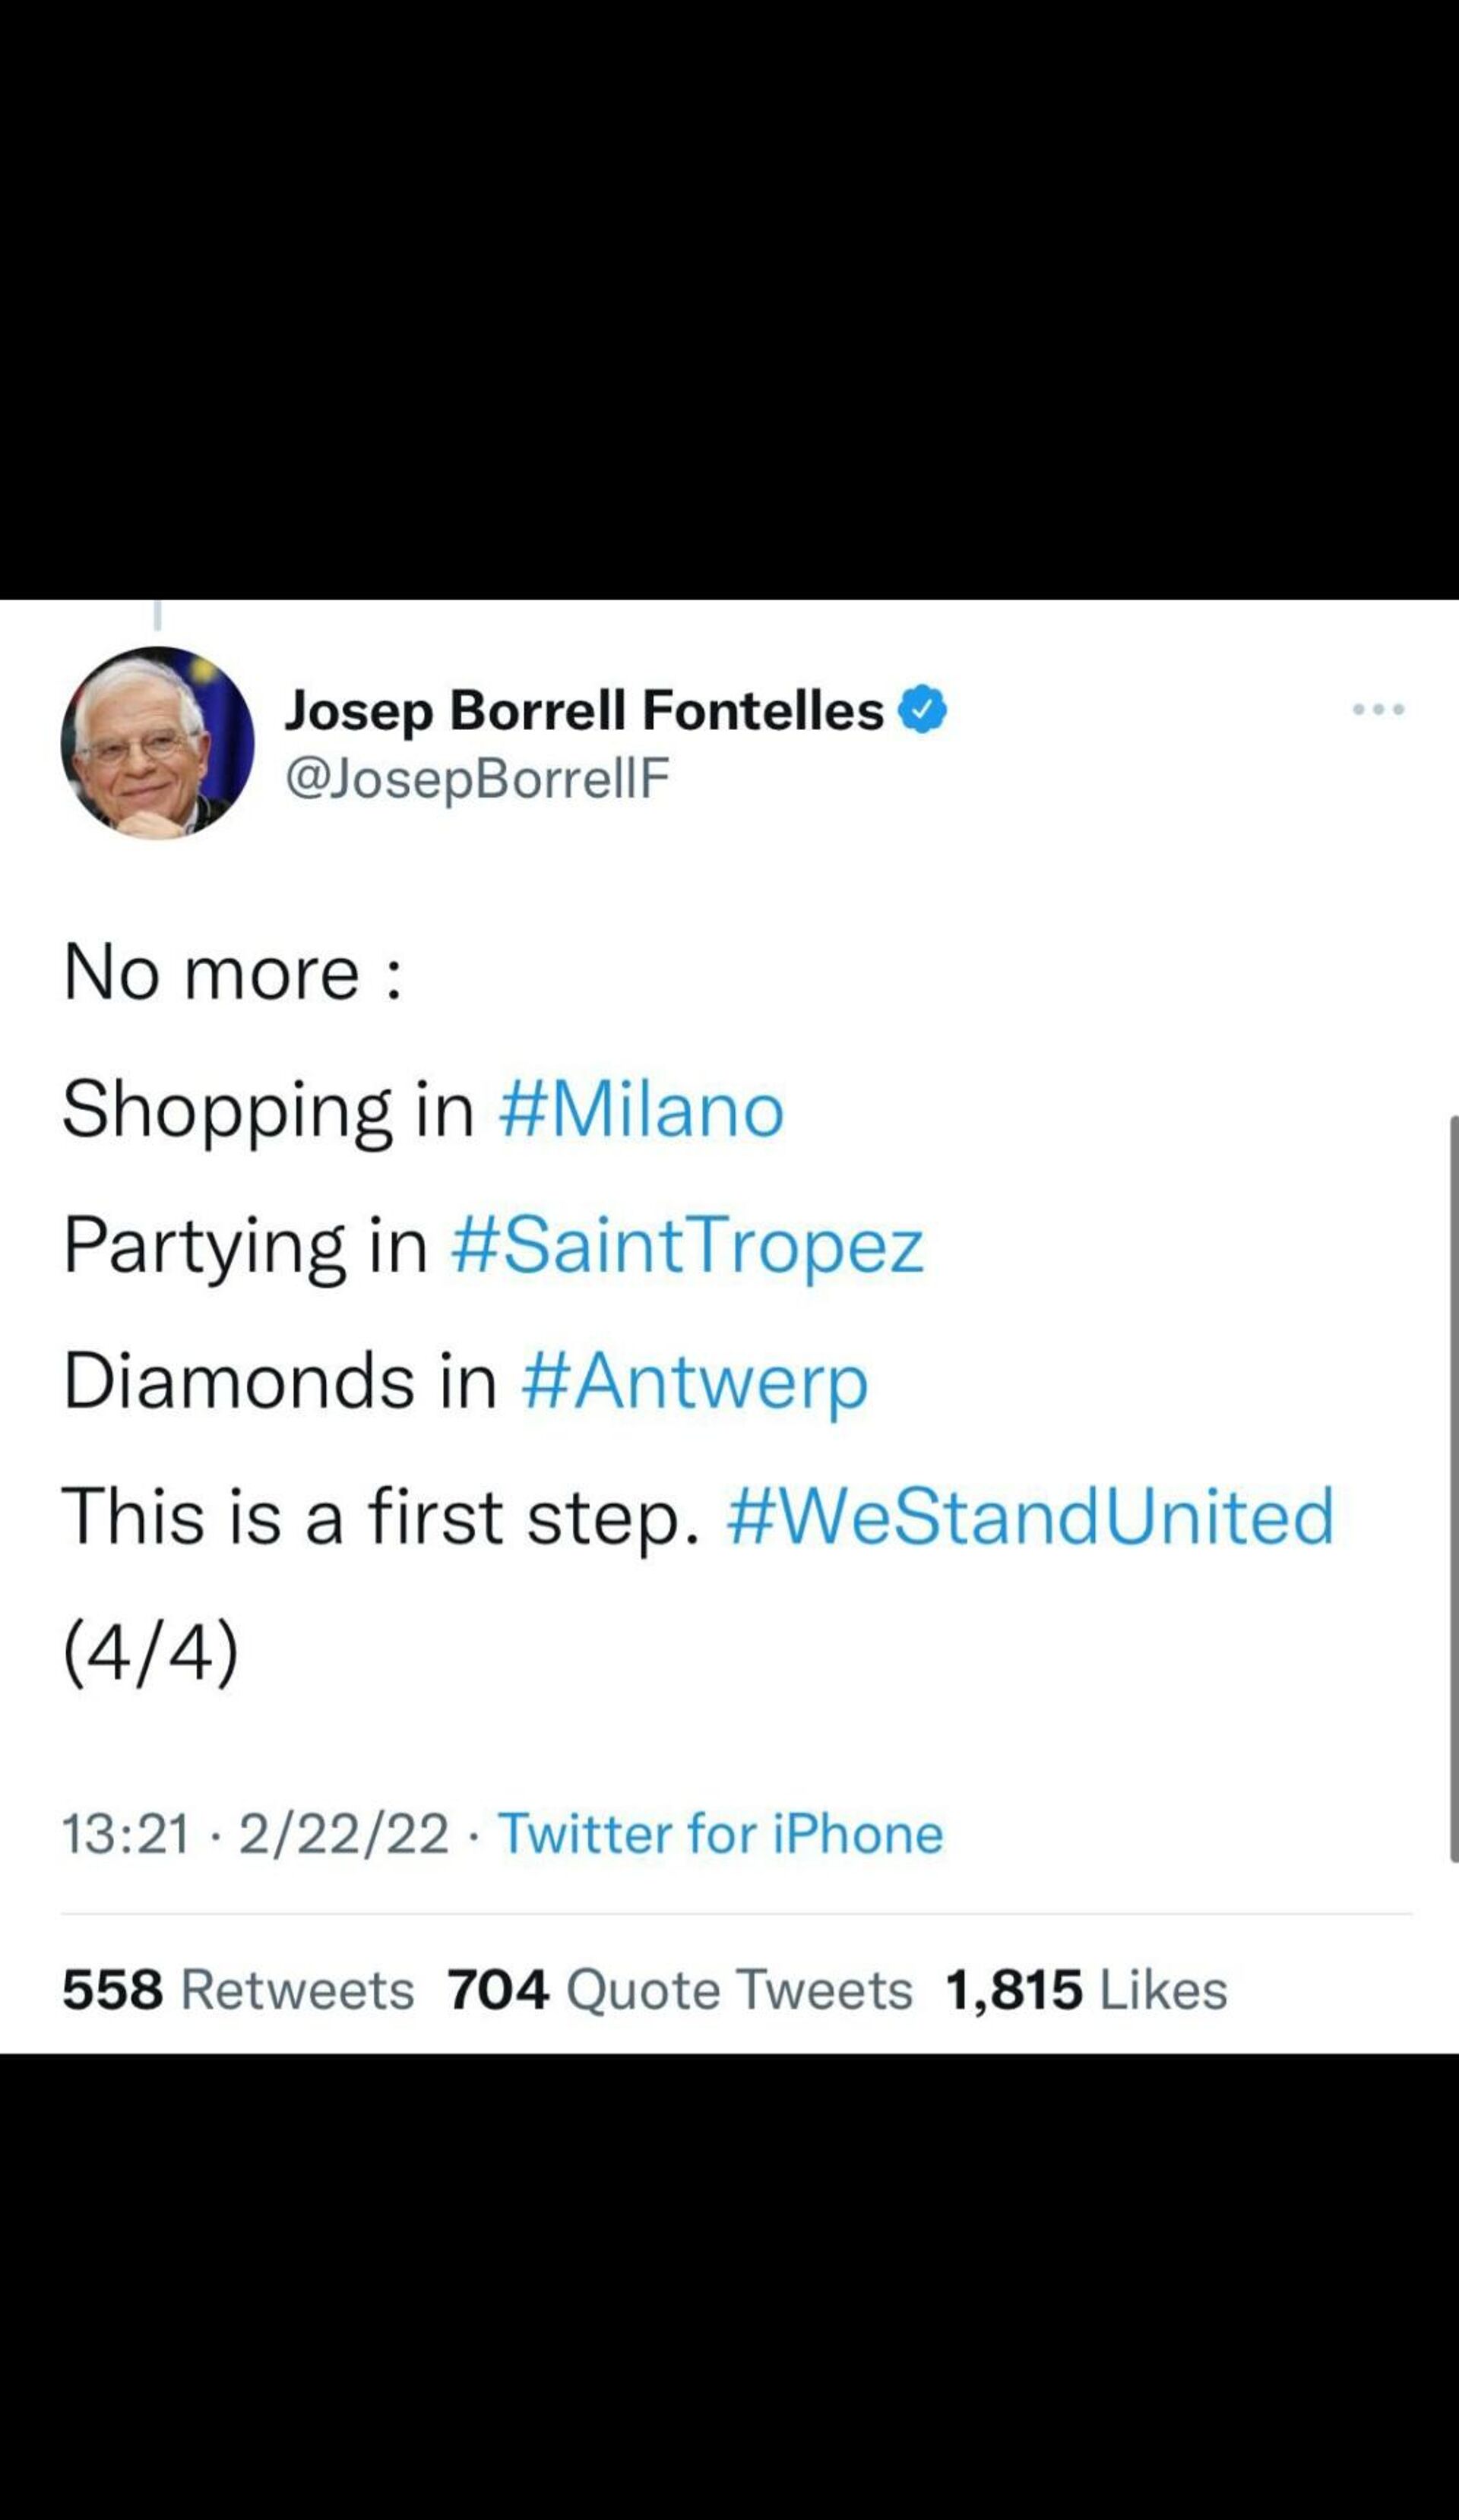 Tuit de Josep Borrell, jefe de la diplomacia de la Unión Europea - Sputnik Mundo, 1920, 22.02.2022